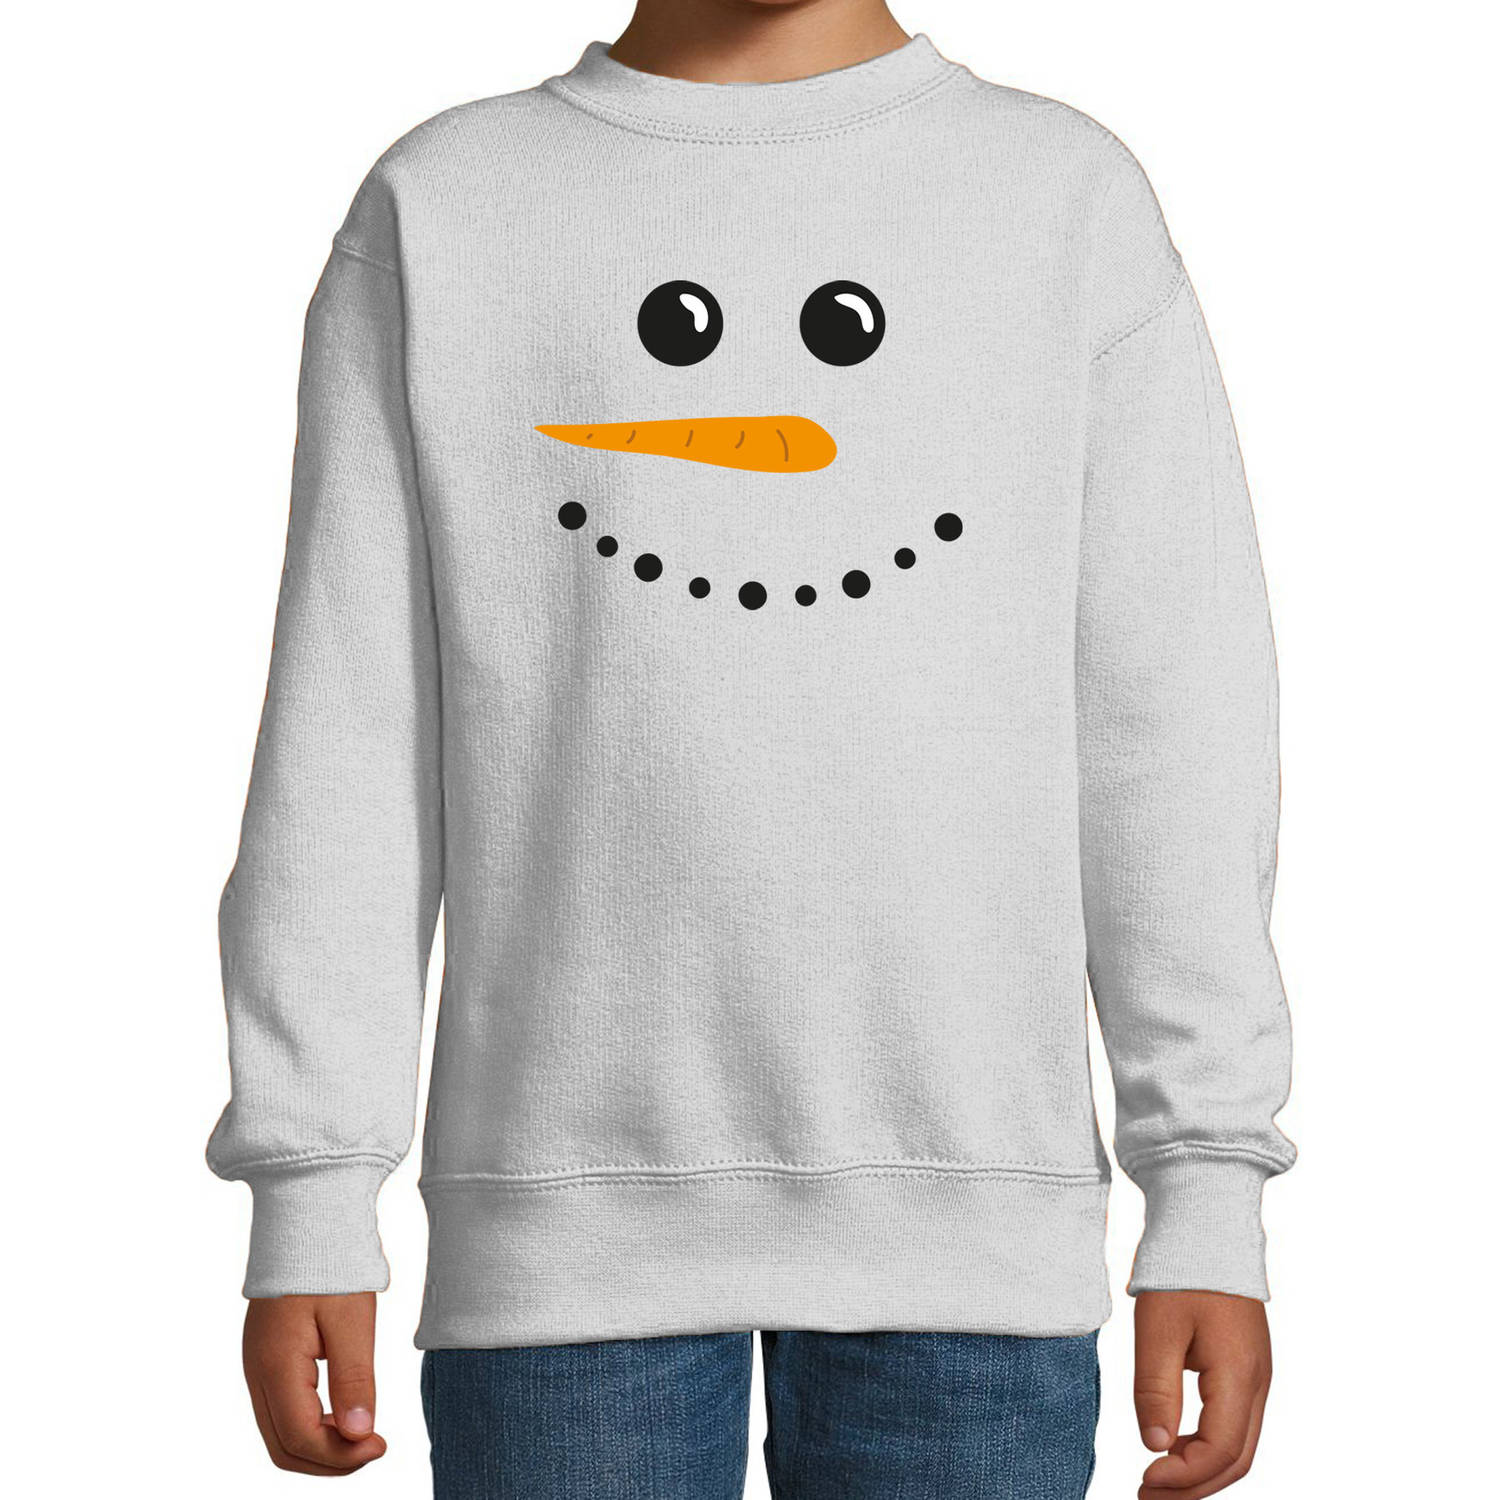 Sneeuwpop foute Kerstsweater / Kersttrui grijs voor kinderen 5-6 jaar (110/116) - kerst truien kind